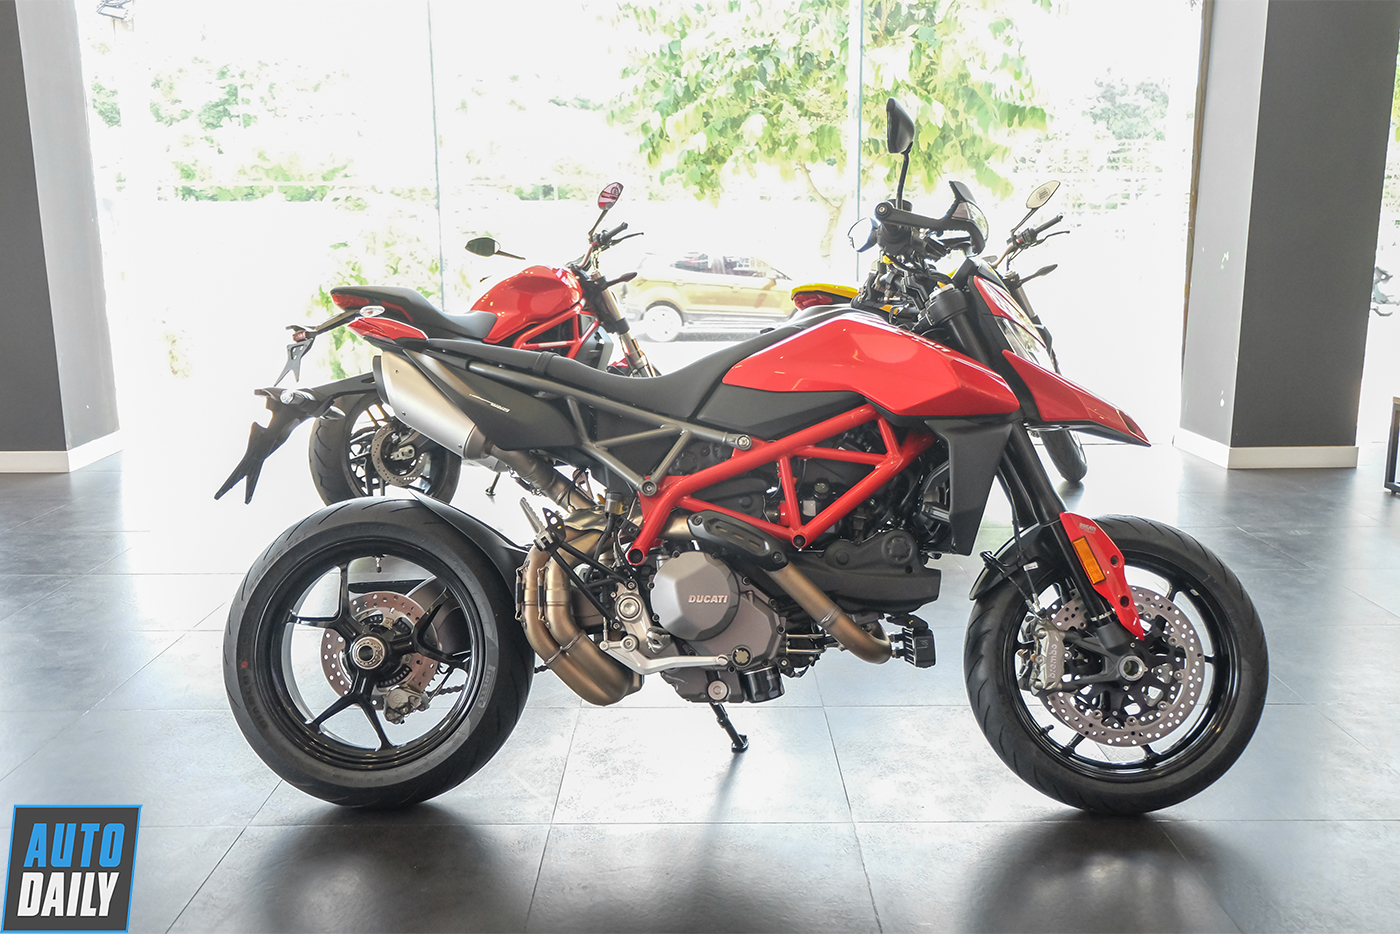 Ducati Hypermotard 939 giá 450 triệu tại Việt Nam dành cho dân phượt   Danhgiaxe